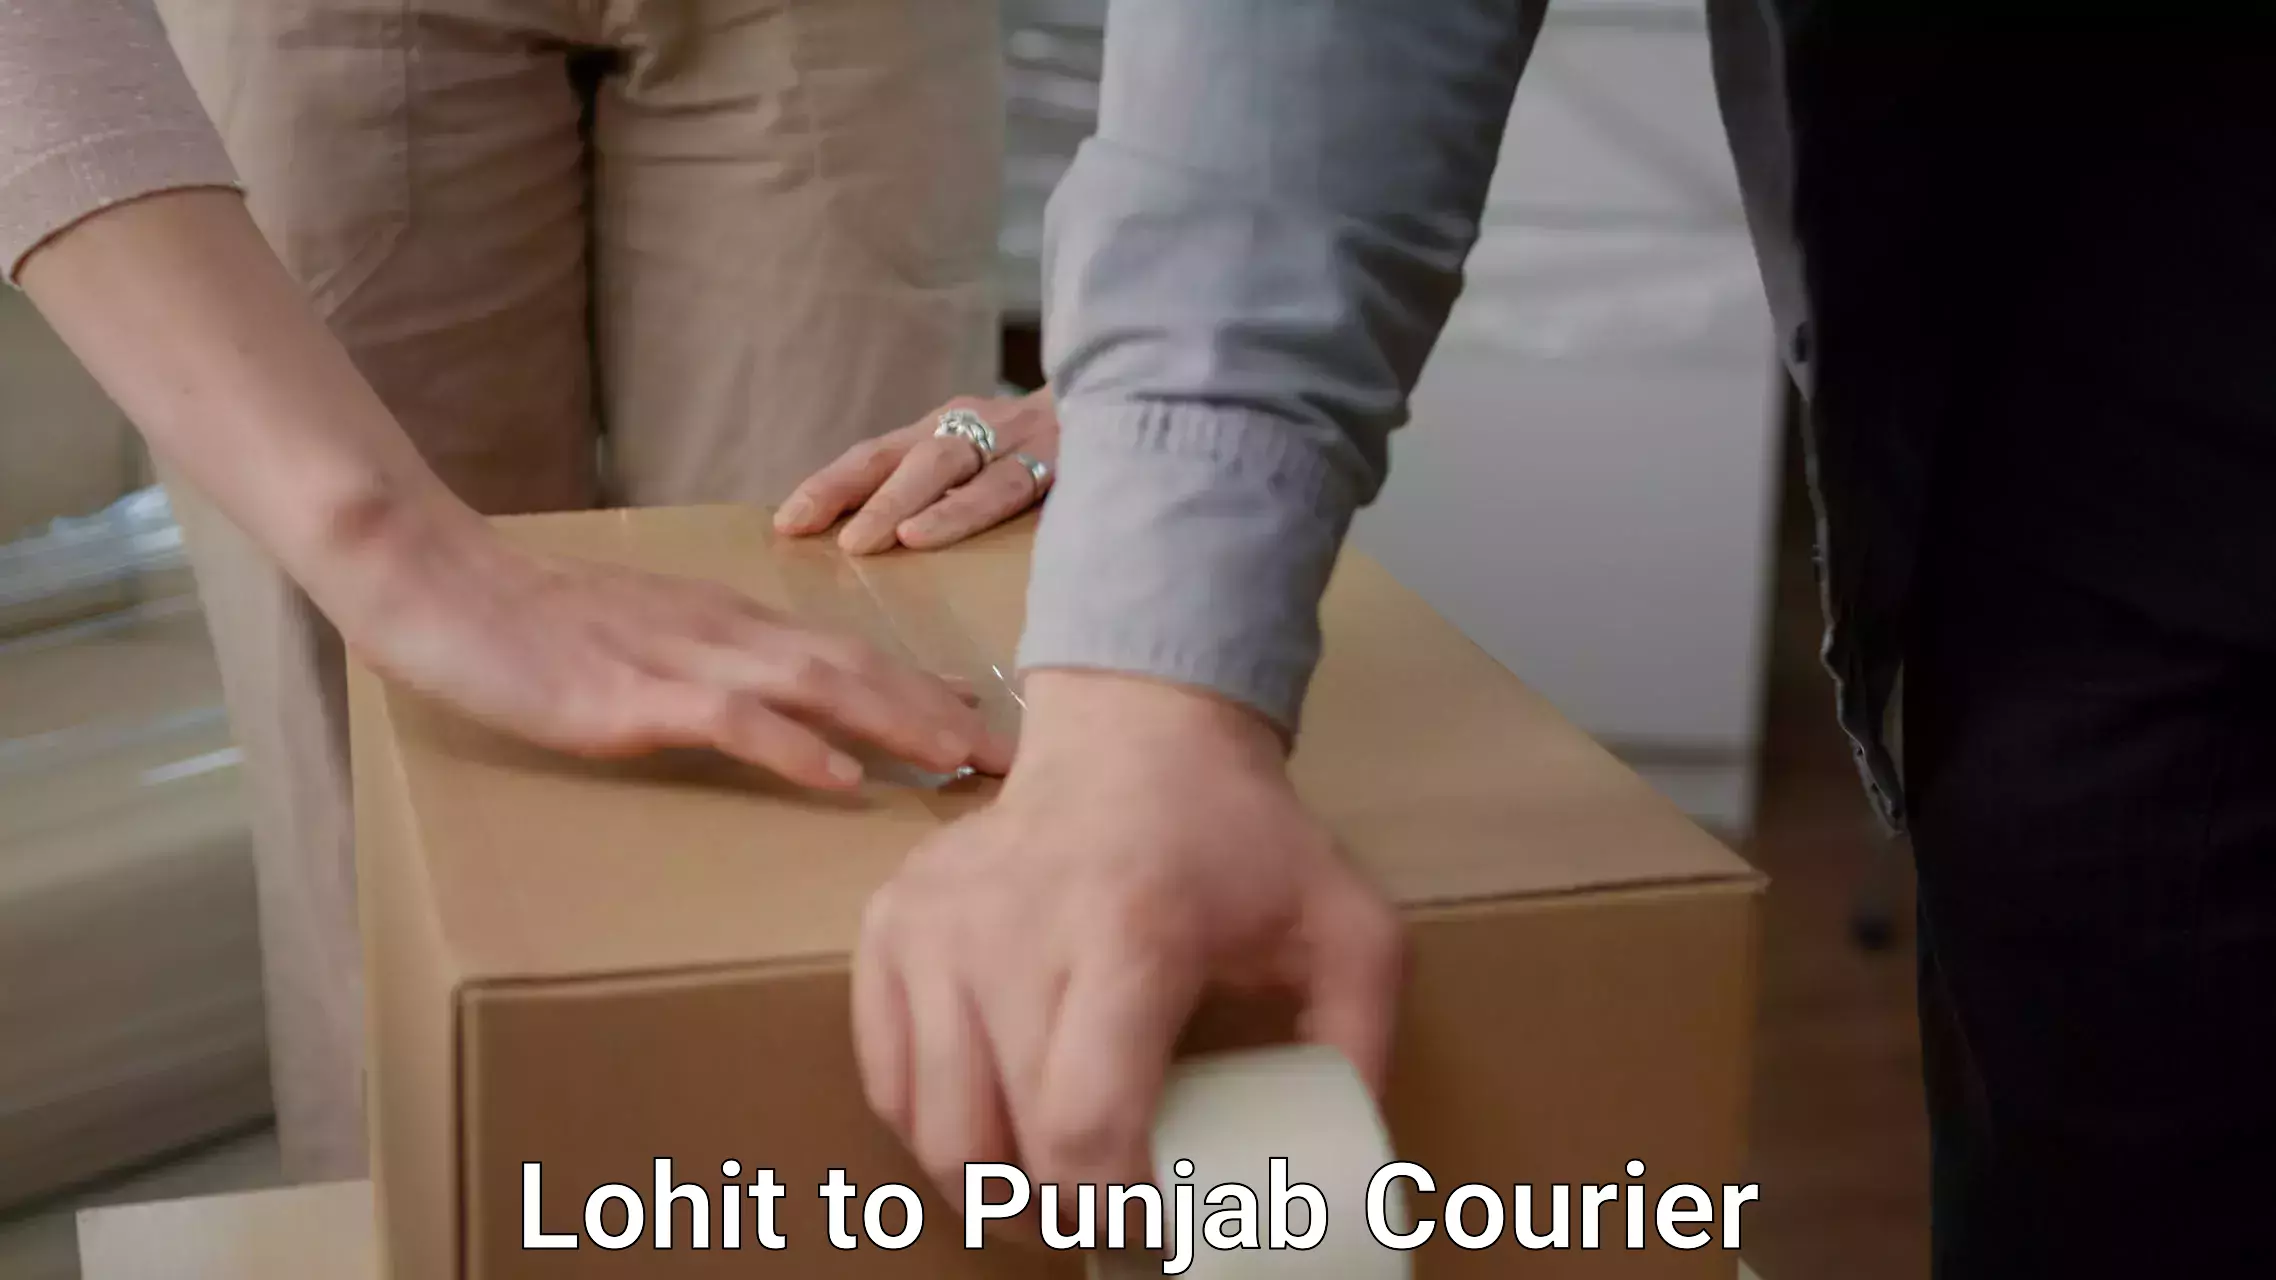 Expert furniture movers Lohit to Jalandhar